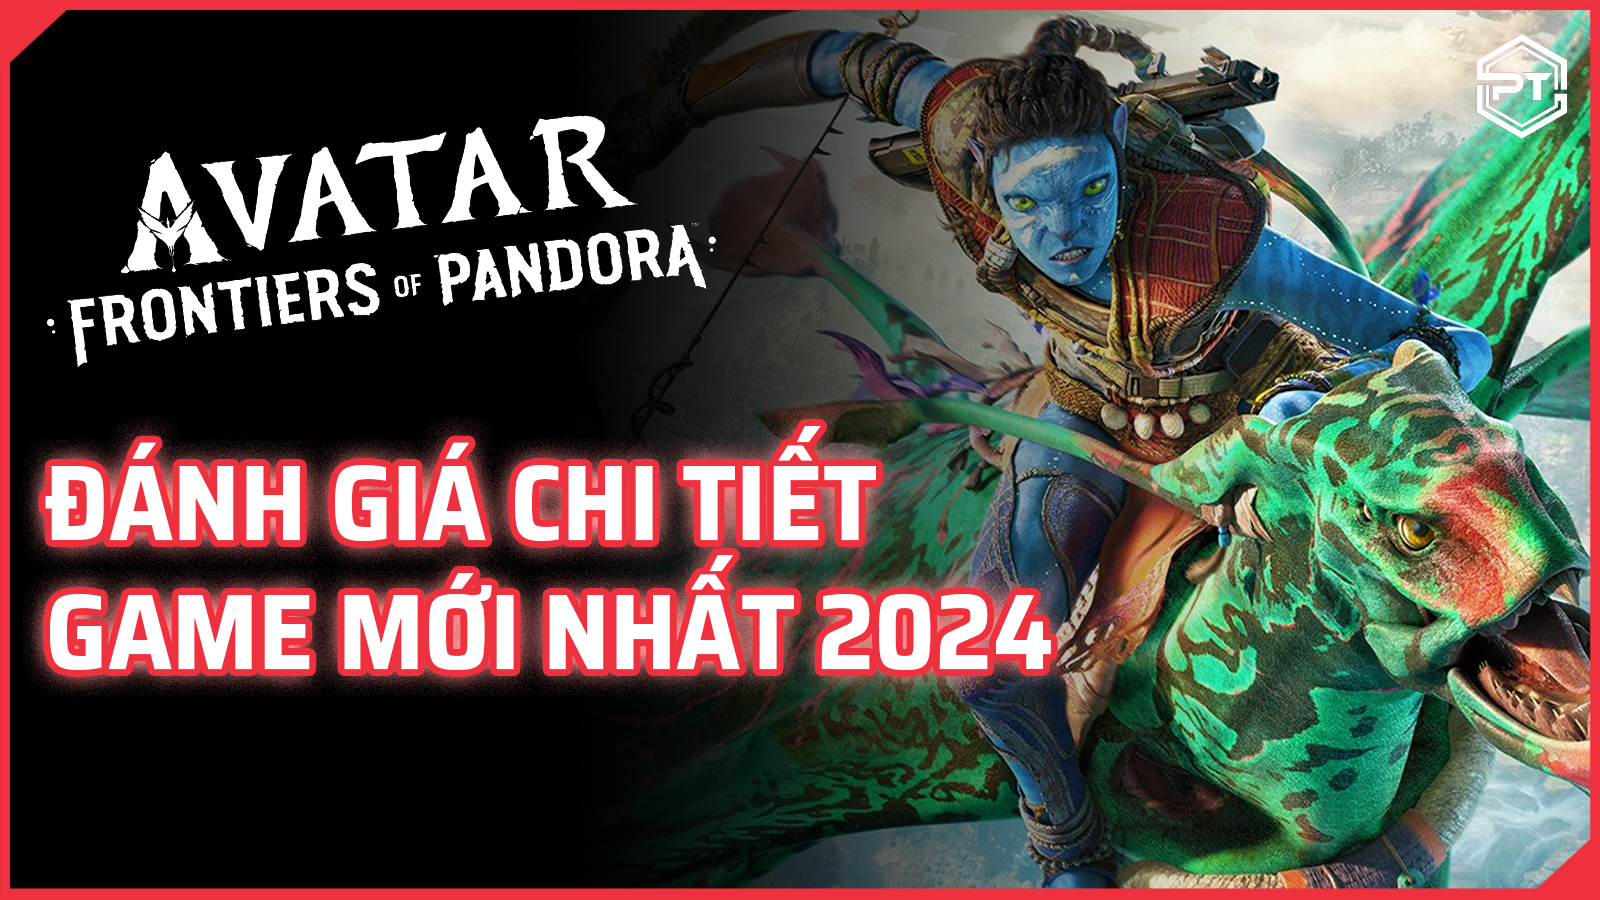 Frontiers of Pandora - Đánh giá chi tiết game mới nhất 2024